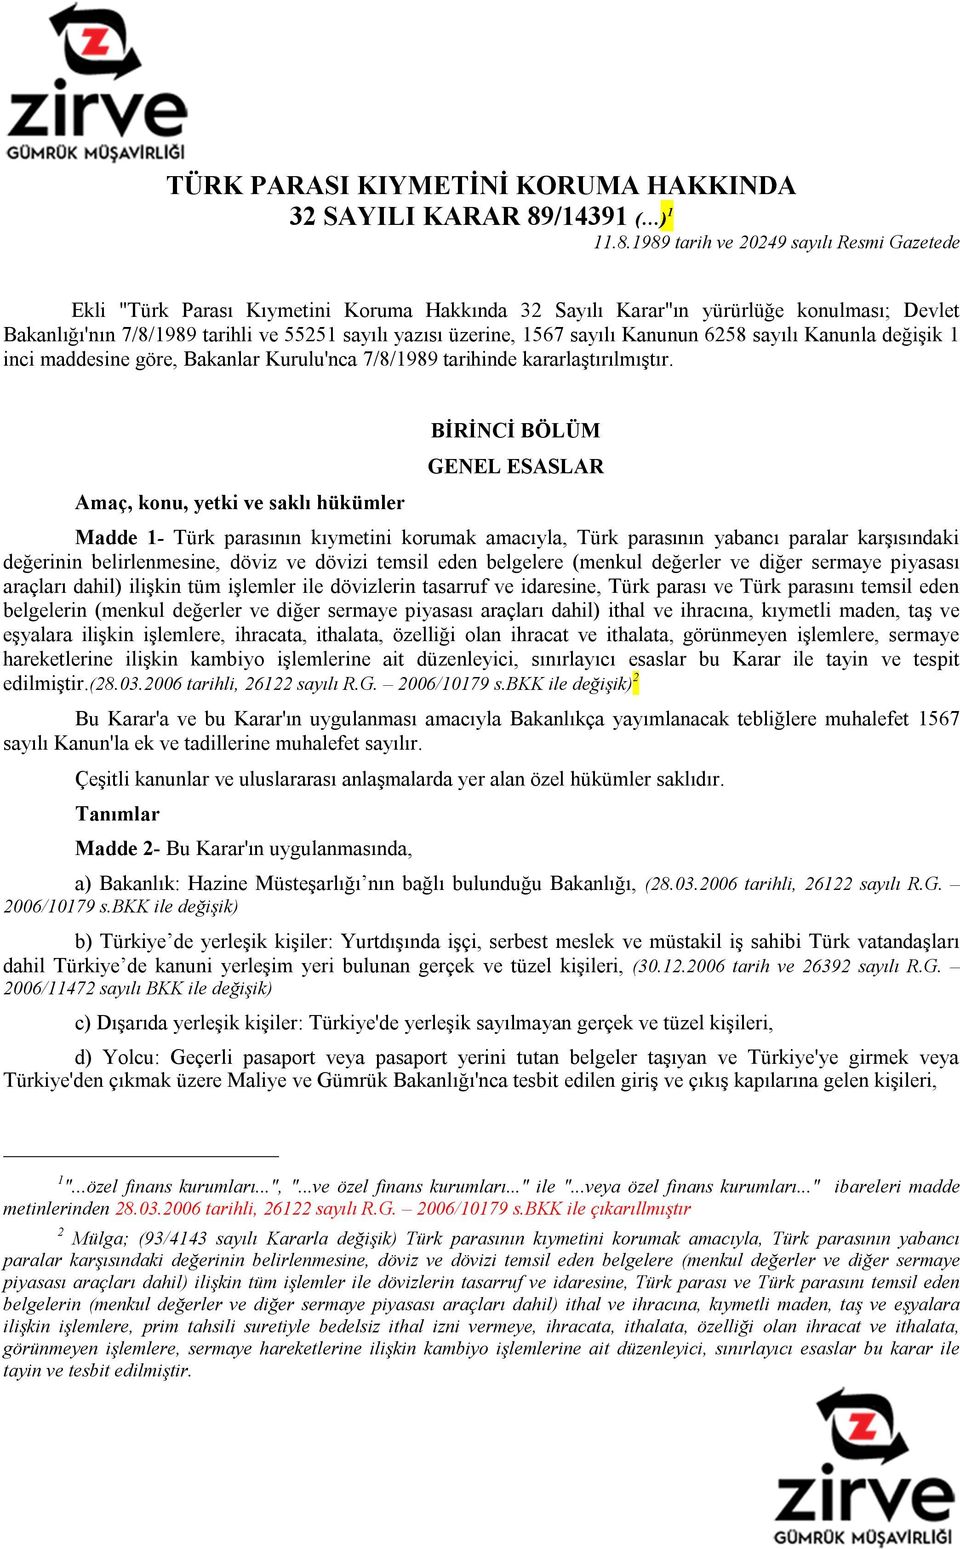 1989 tarih ve 20249 sayılı Resmi Gazetede Ekli "Türk Parası Kıymetini Koruma Hakkında 32 Sayılı Karar"ın yürürlüğe konulması; Devlet Bakanlığı'nın 7/8/1989 tarihli ve 55251 sayılı yazısı üzerine,